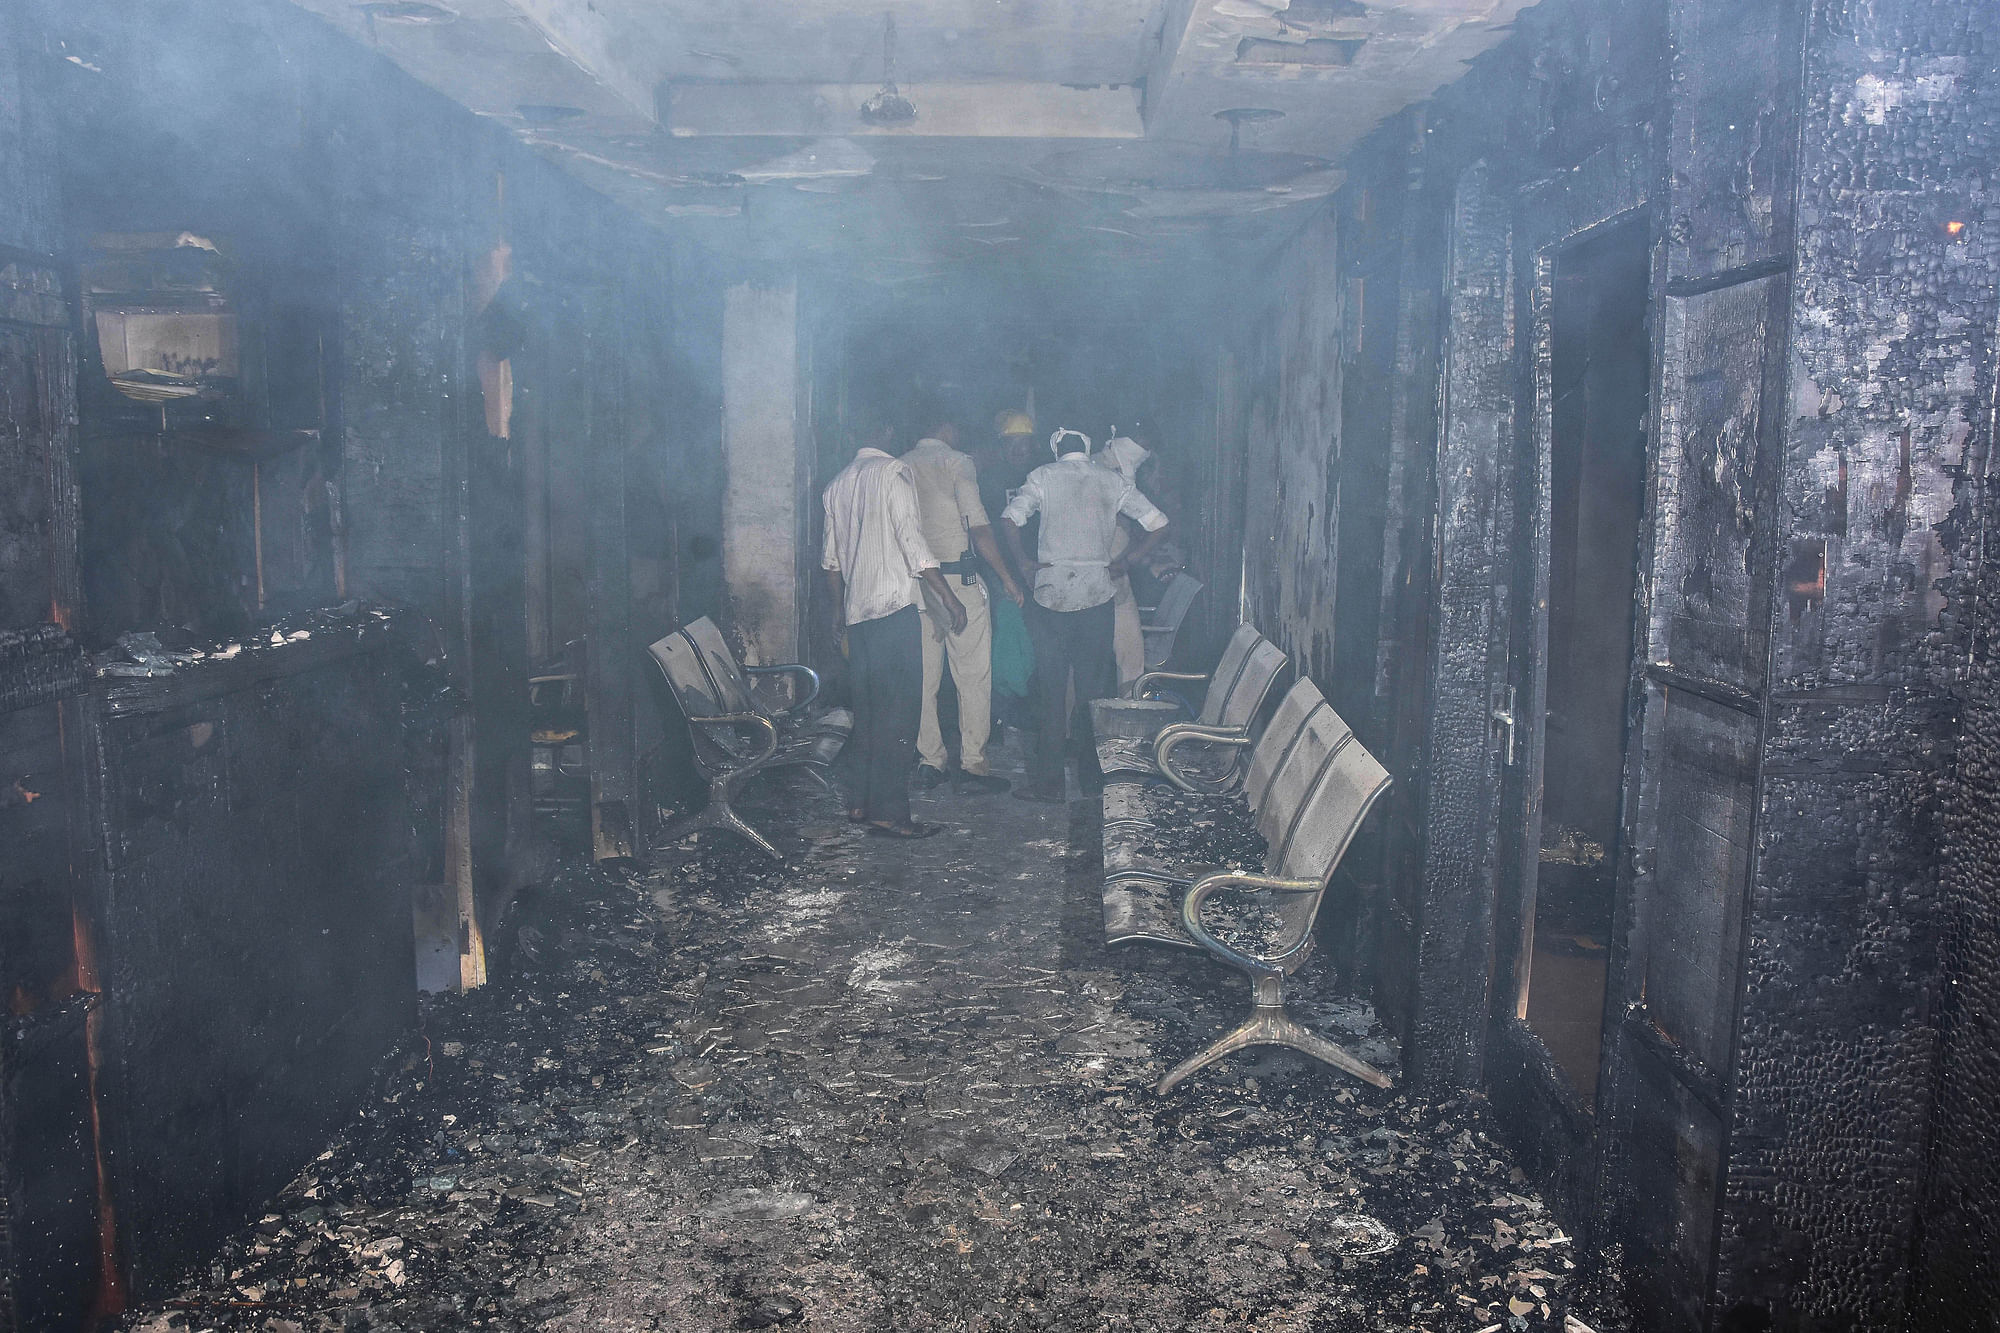 <div class="paragraphs"><p>MP: जबलपुर के हॉस्पिटल में कैसे लगी आग, 8 मौतों का जिम्मेदार कौन?</p></div>